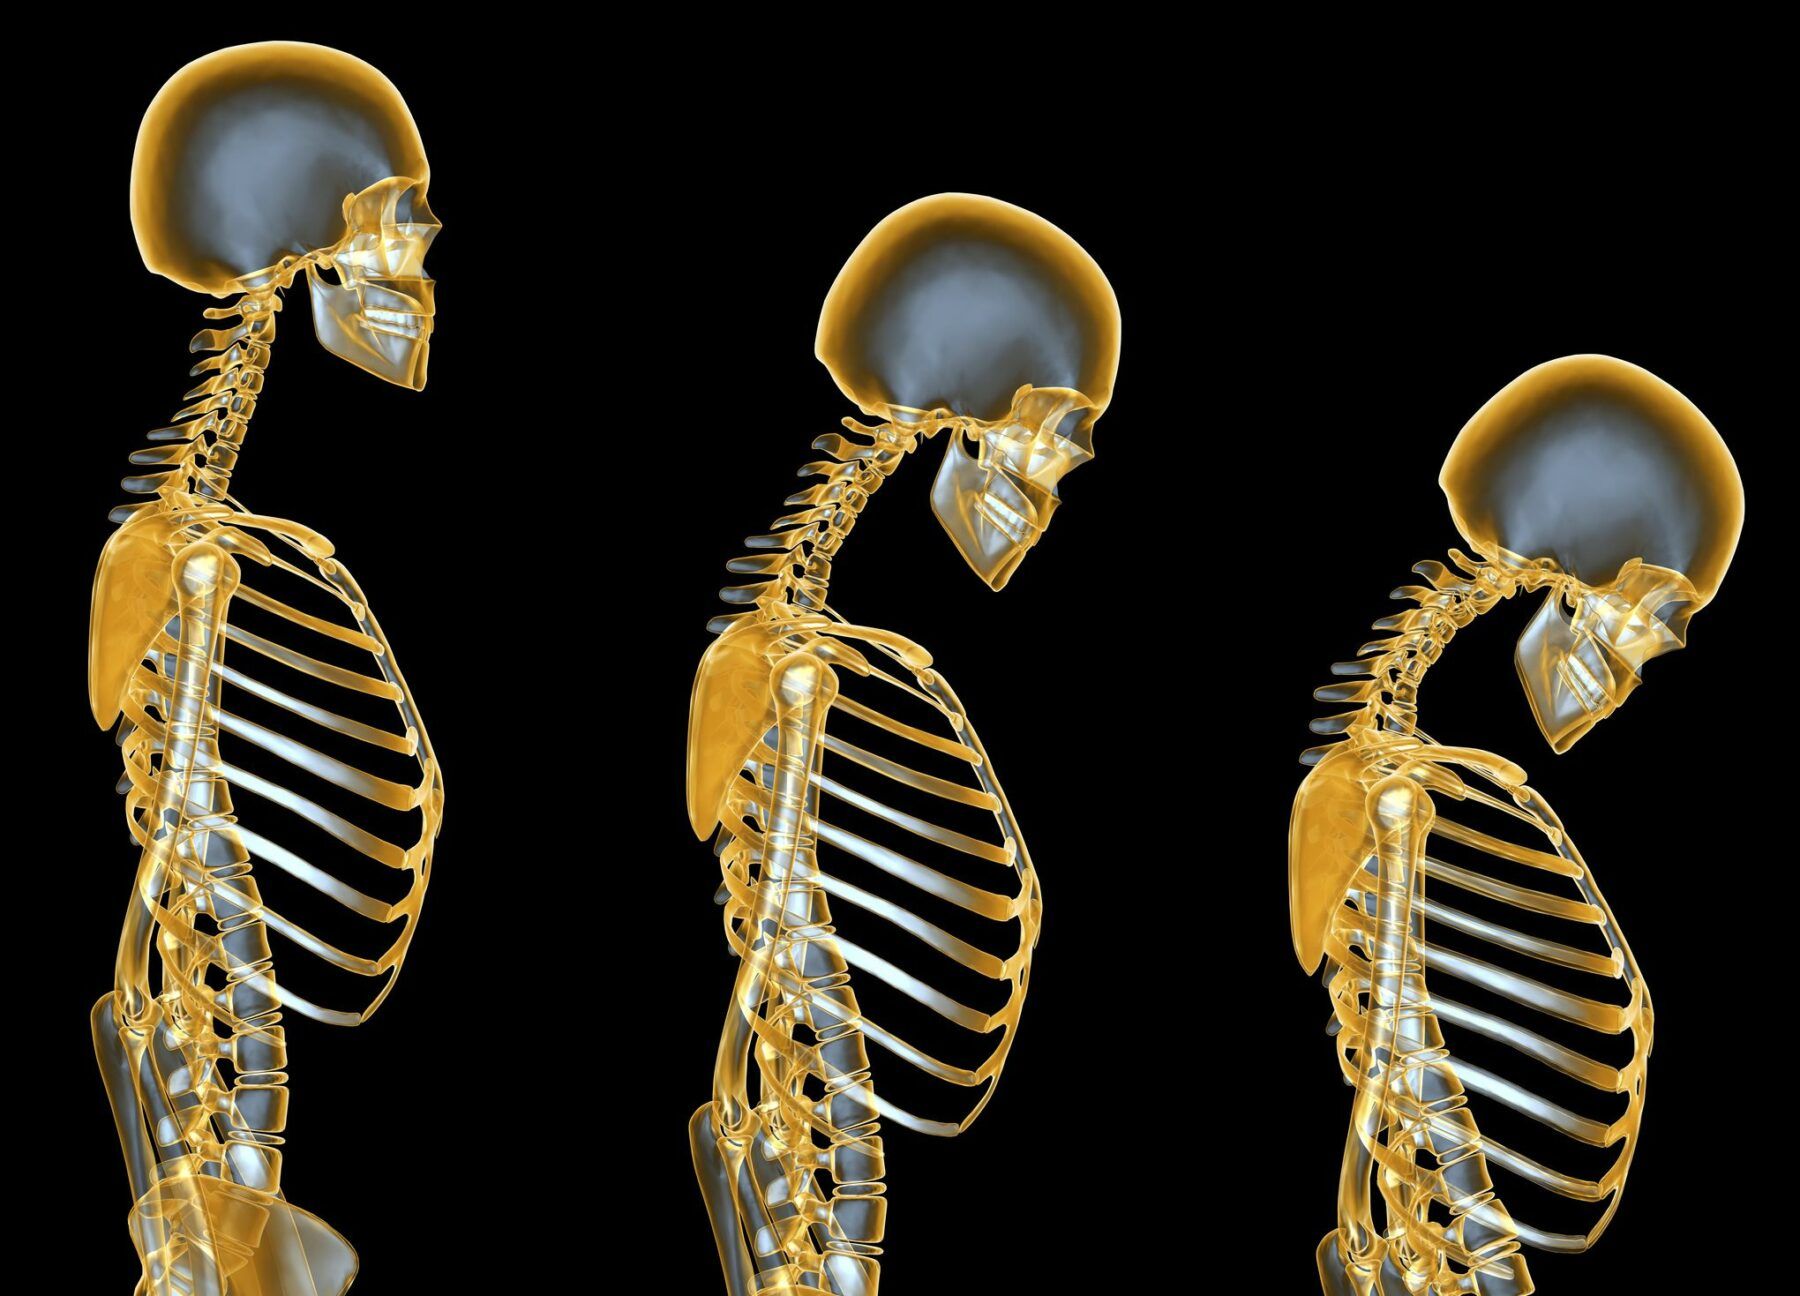 Obicei care duce la osteoporoza